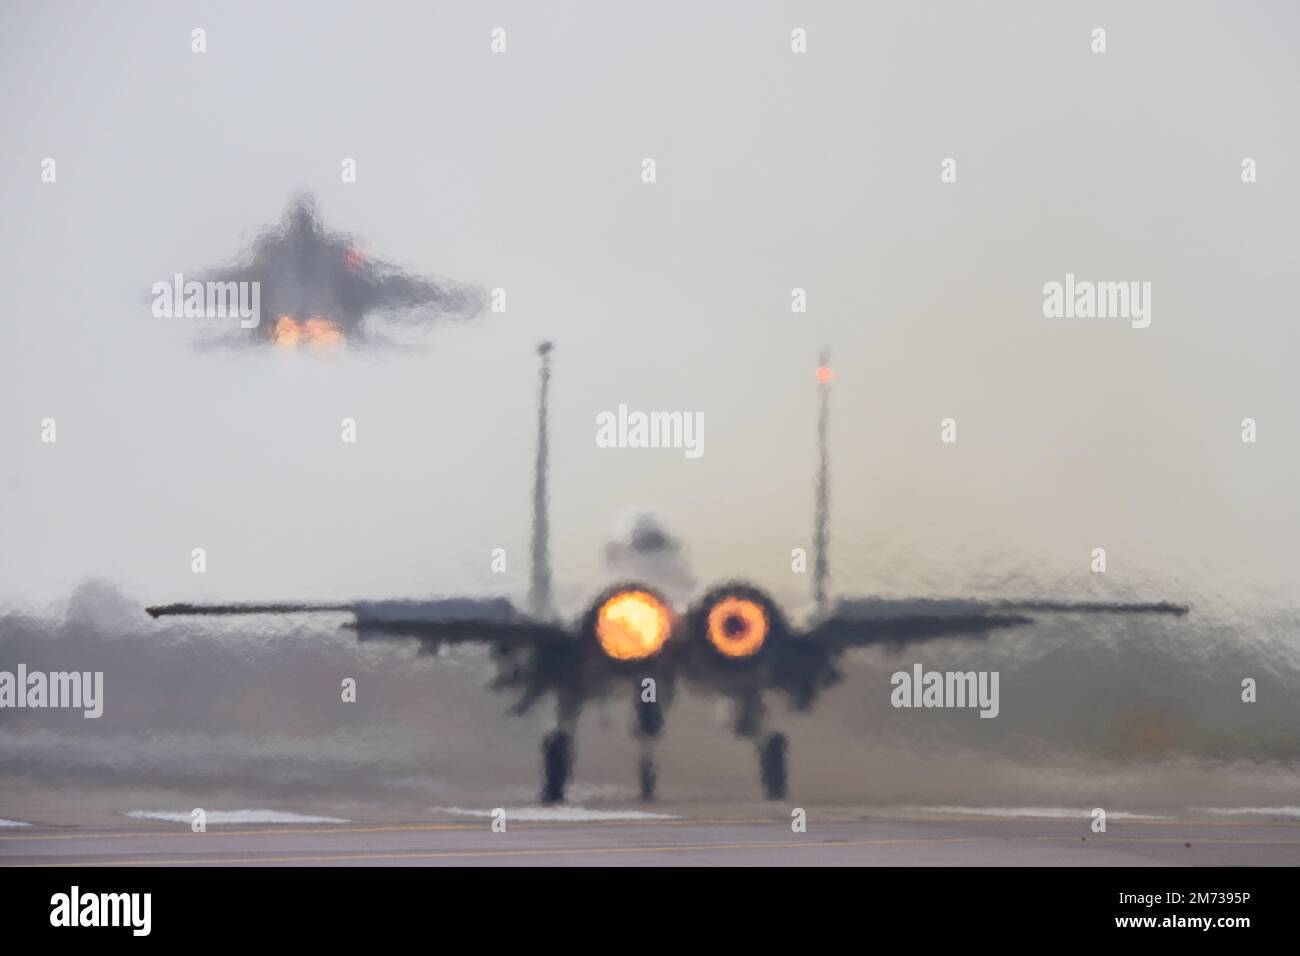 Chasseur Jet - brume de chaleur, flou et brûleurs. Le F-15fighter lance ses brûleurs d'après-vente tandis qu'un autre souffle dans le ciel dans un décollage spectaculaire Banque D'Images